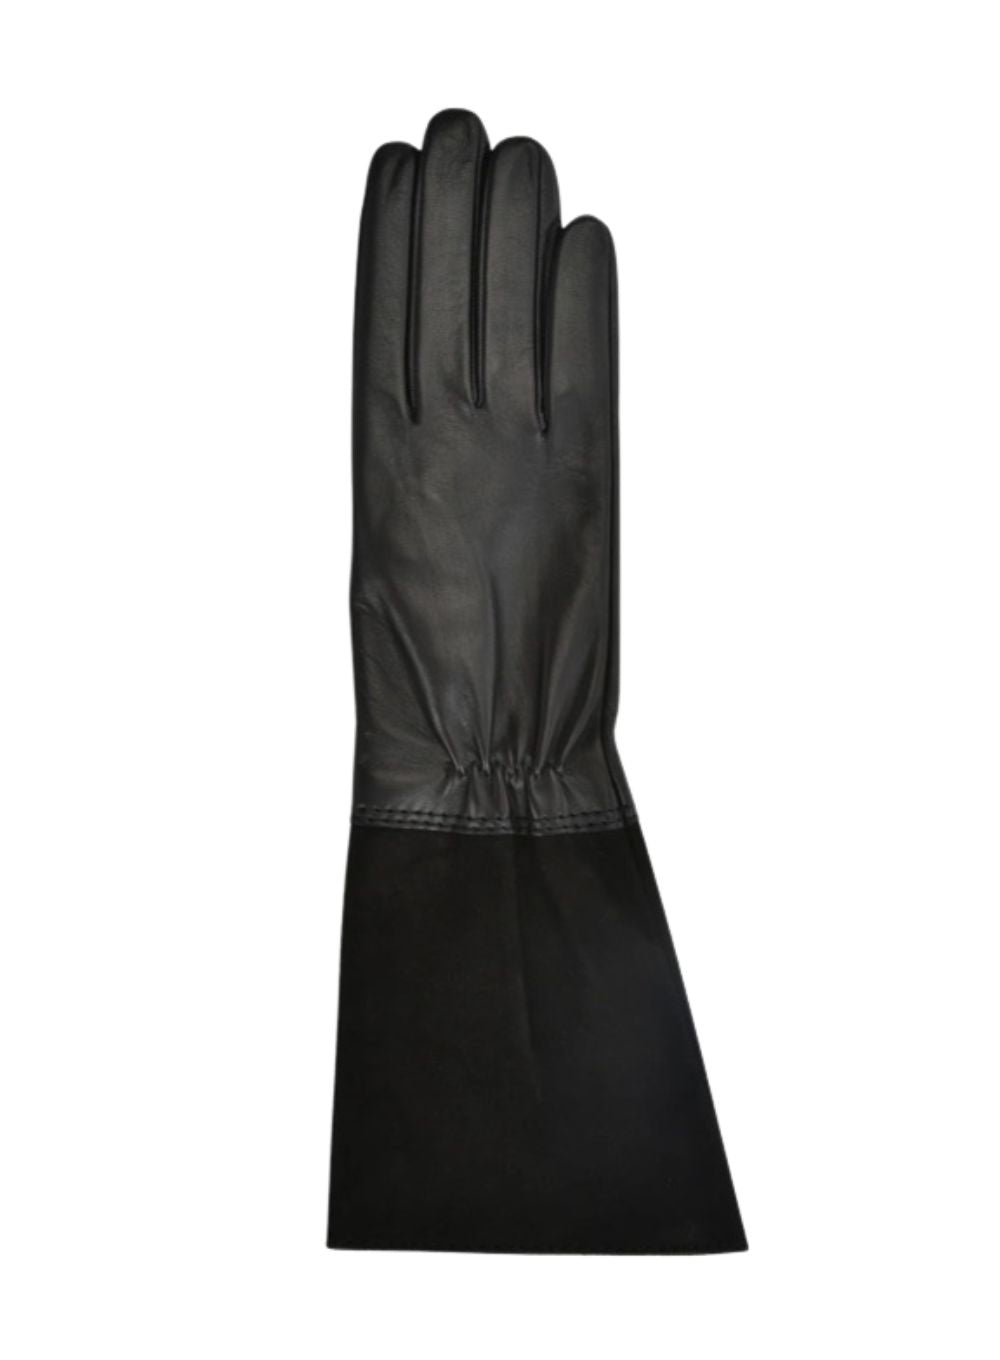 CAROLINA AMATO | Leather & Suede Gauntlet Gloves